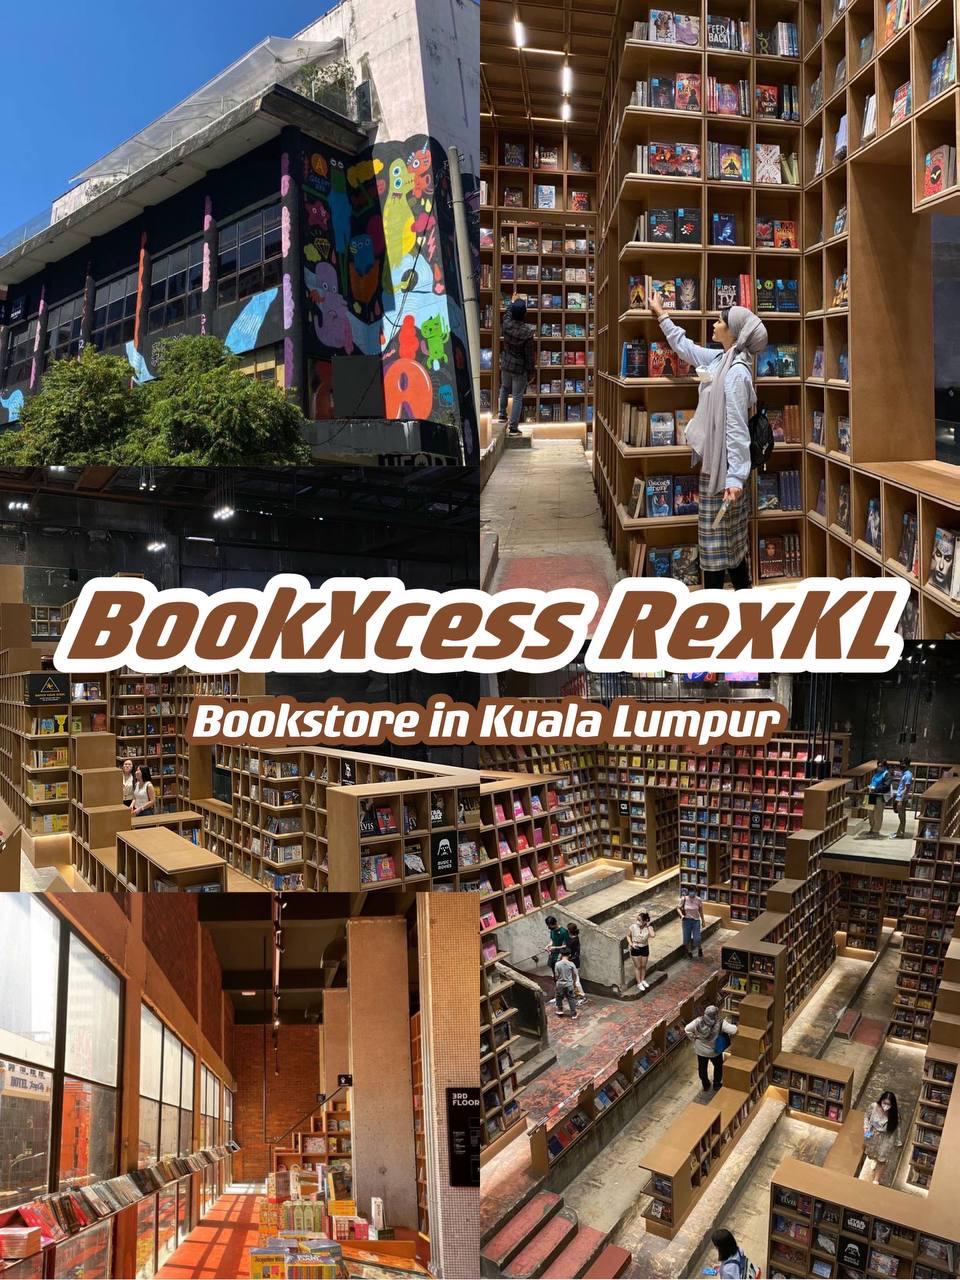 Bookxcess rexkl